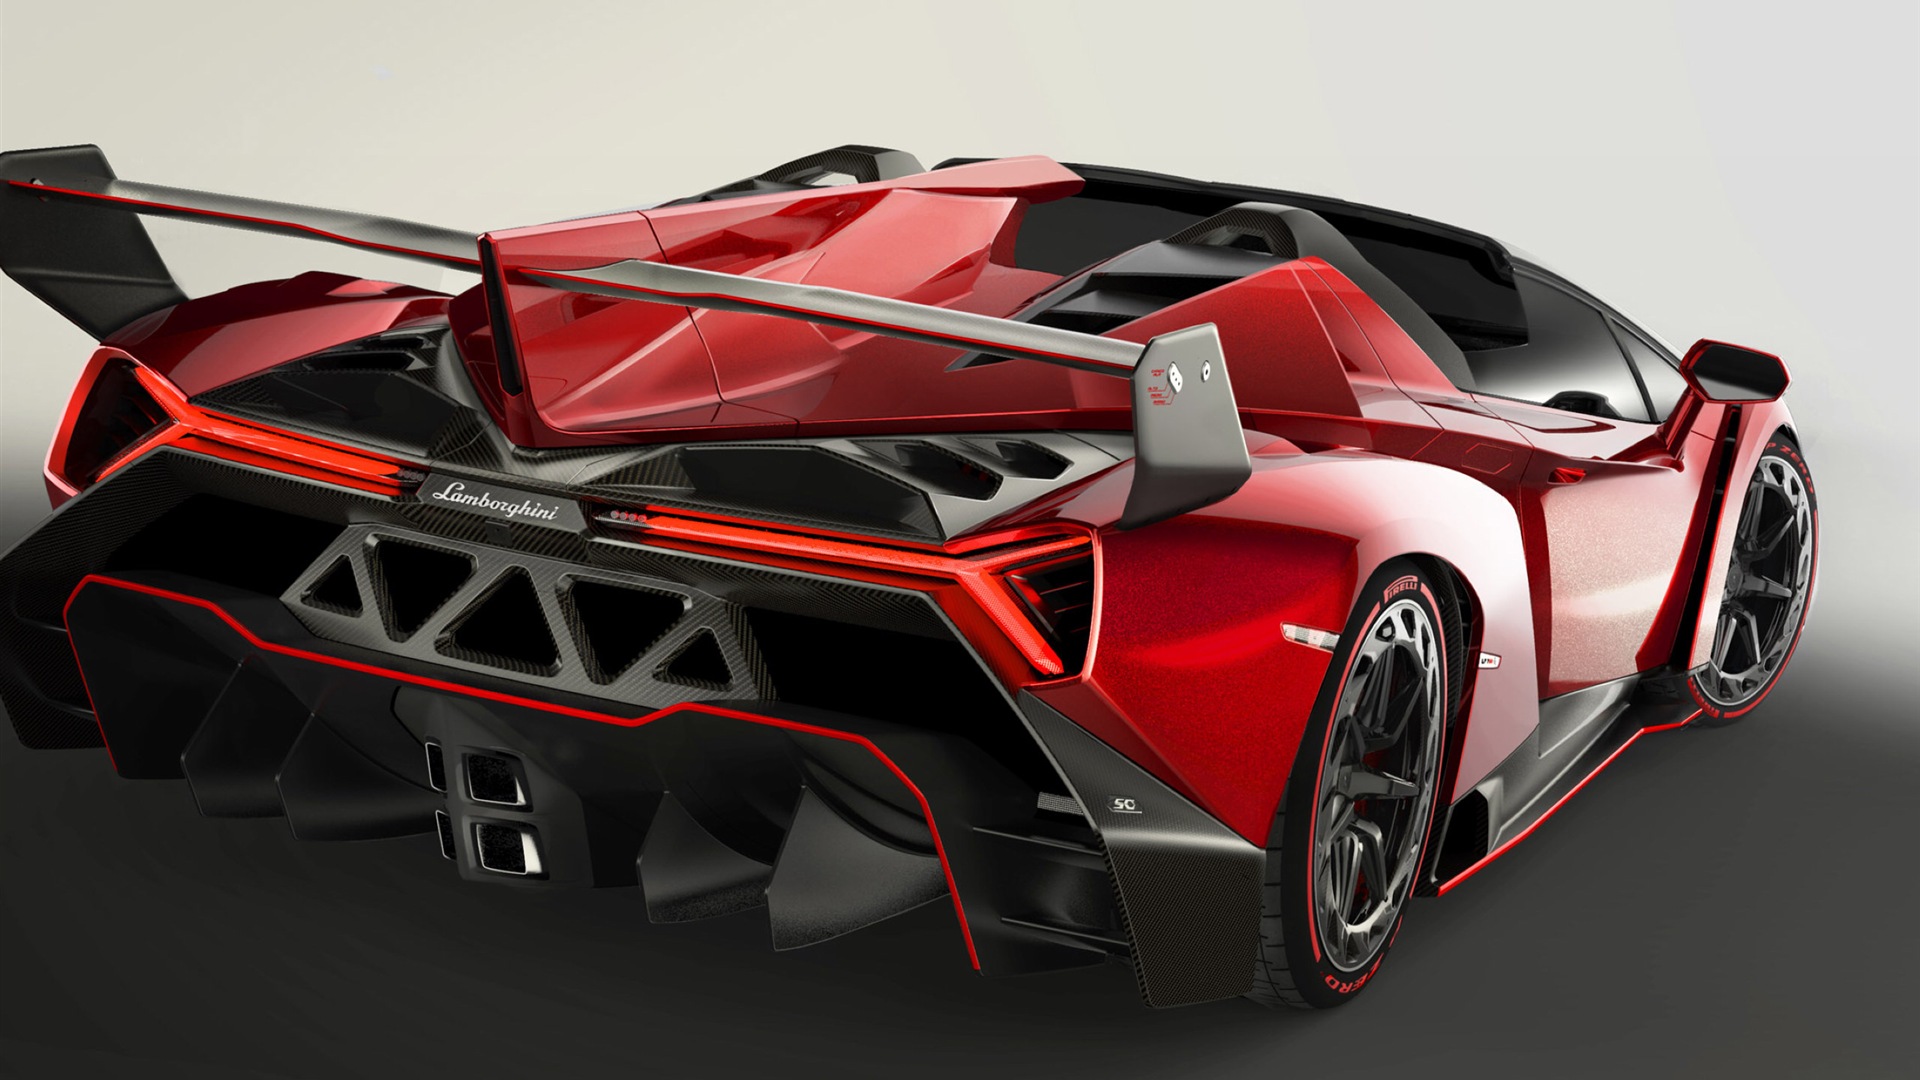 2014 Lamborghini Veneno Roadster red supercar HD wallpapers #1 - 1920x1080